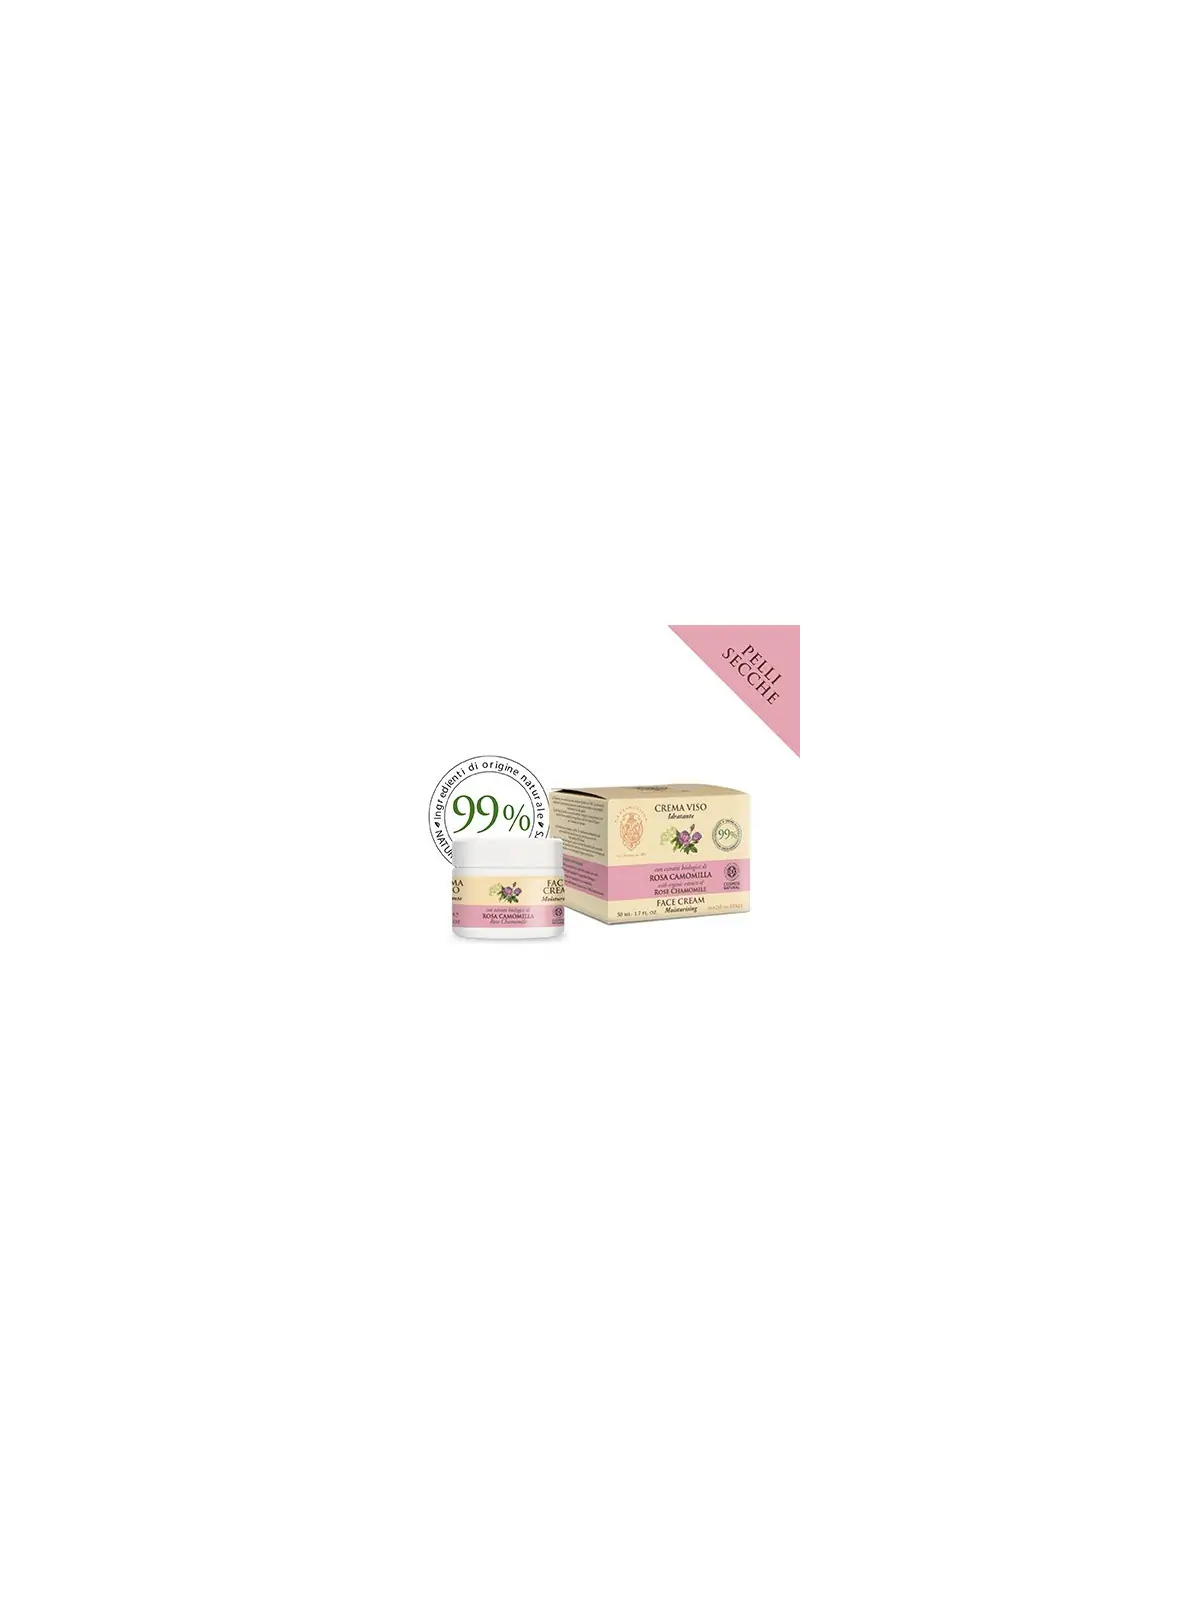 La Florentina crema viso rosa camomilla 50 ml 12,90 €